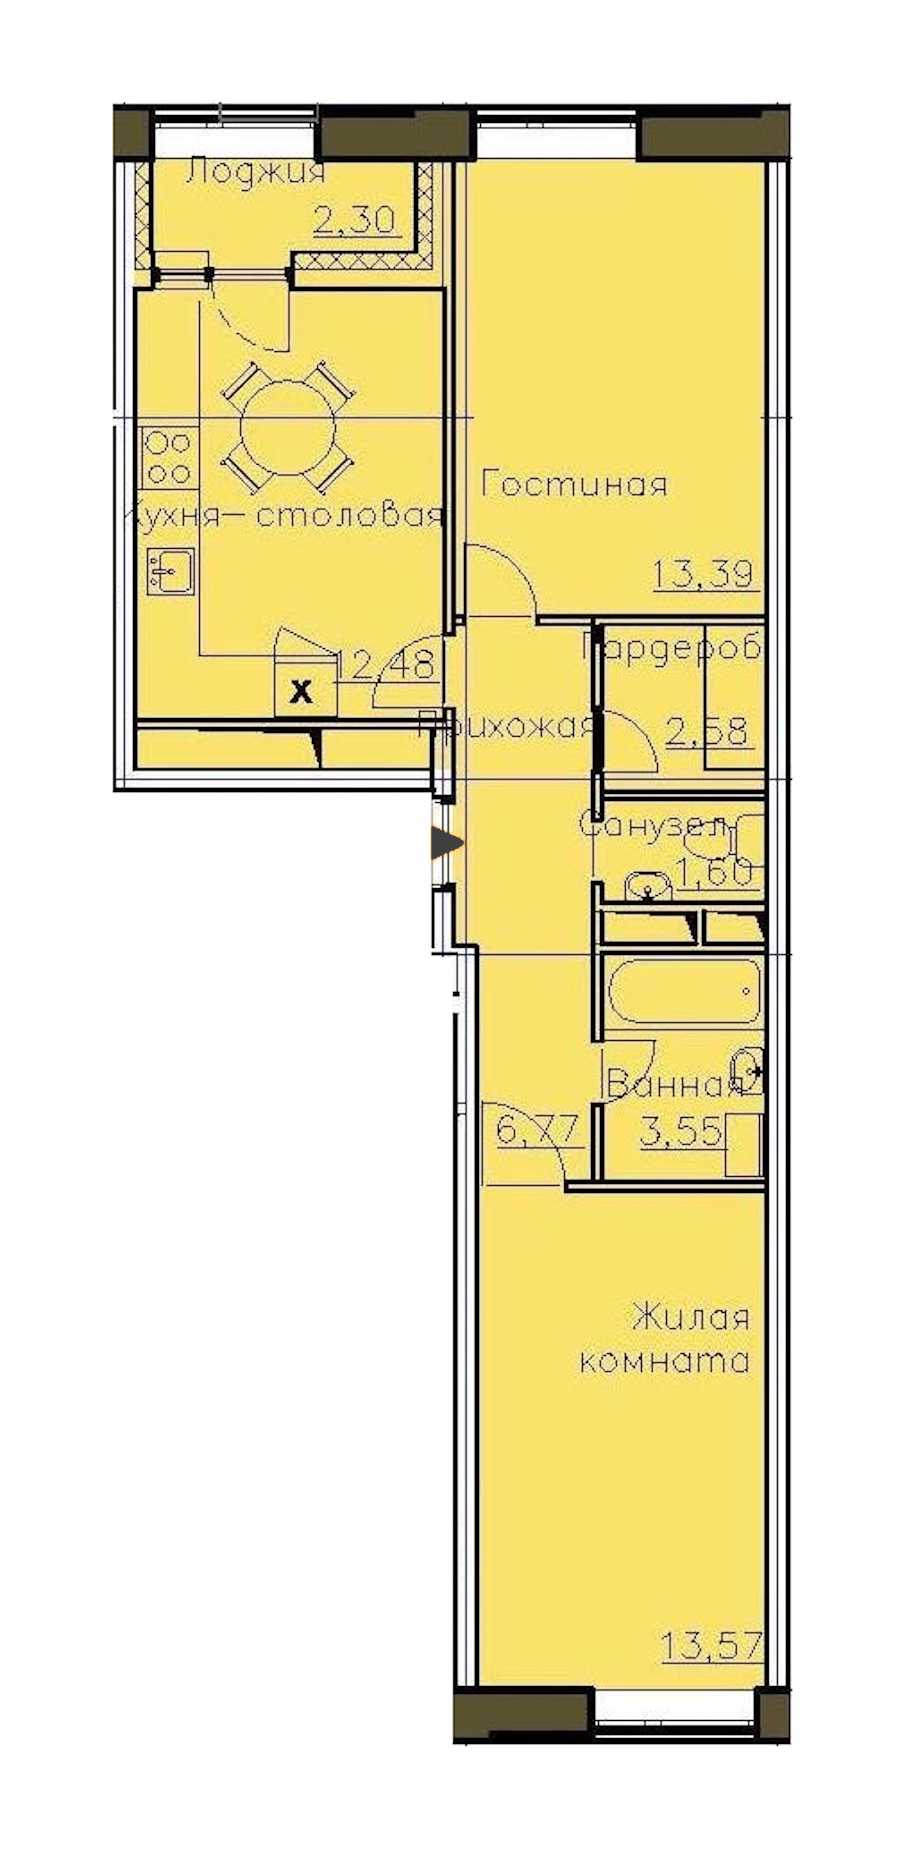 Двухкомнатная квартира в : площадь 55.09 м2 , этаж: 13 – купить в Санкт-Петербурге